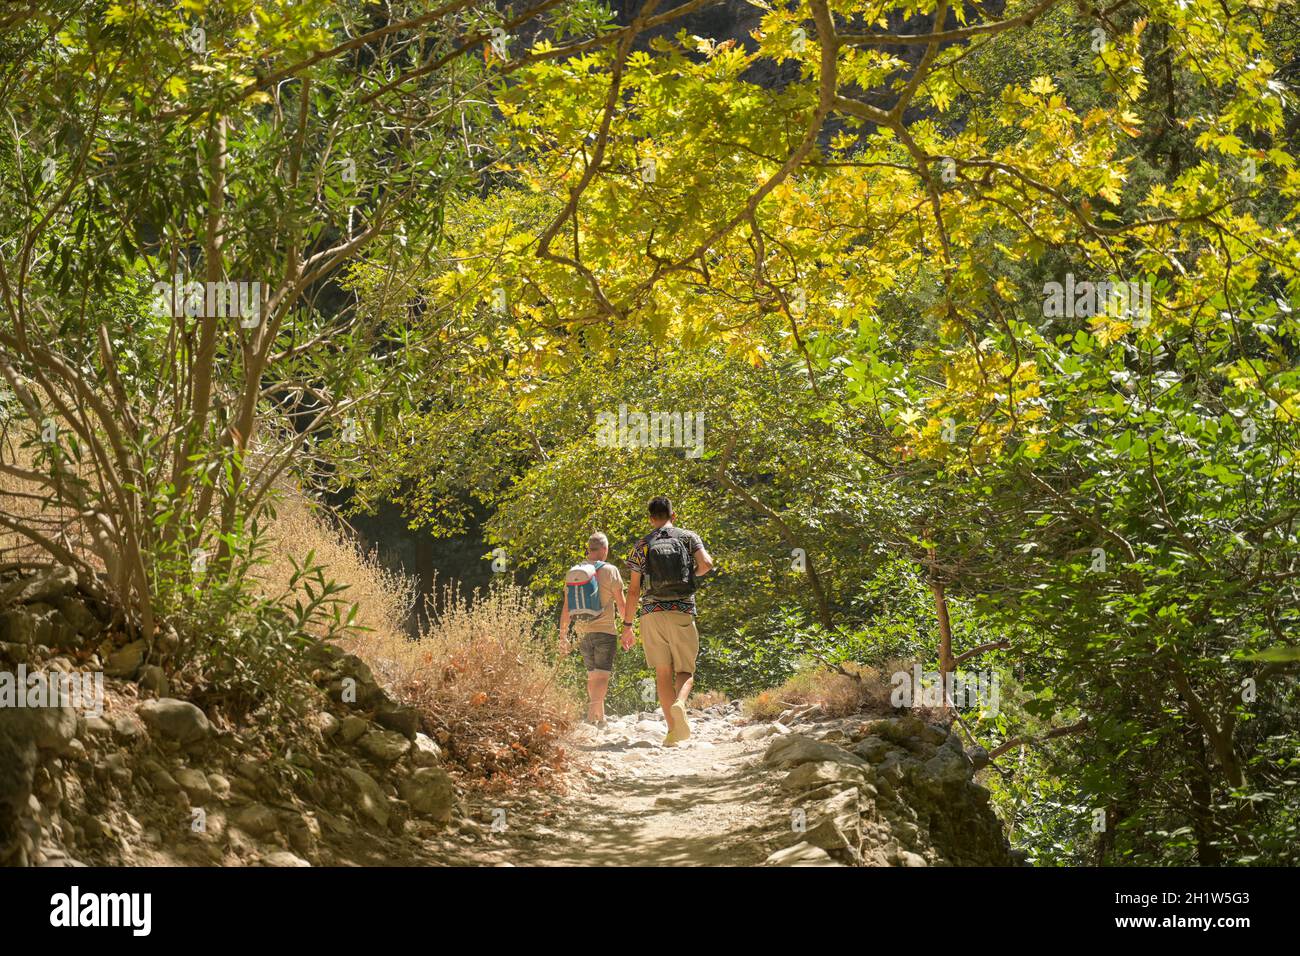 Wanderweg, mittlere Passage, Samaria Schlucht, Kreta, Griechenland Stock Photo